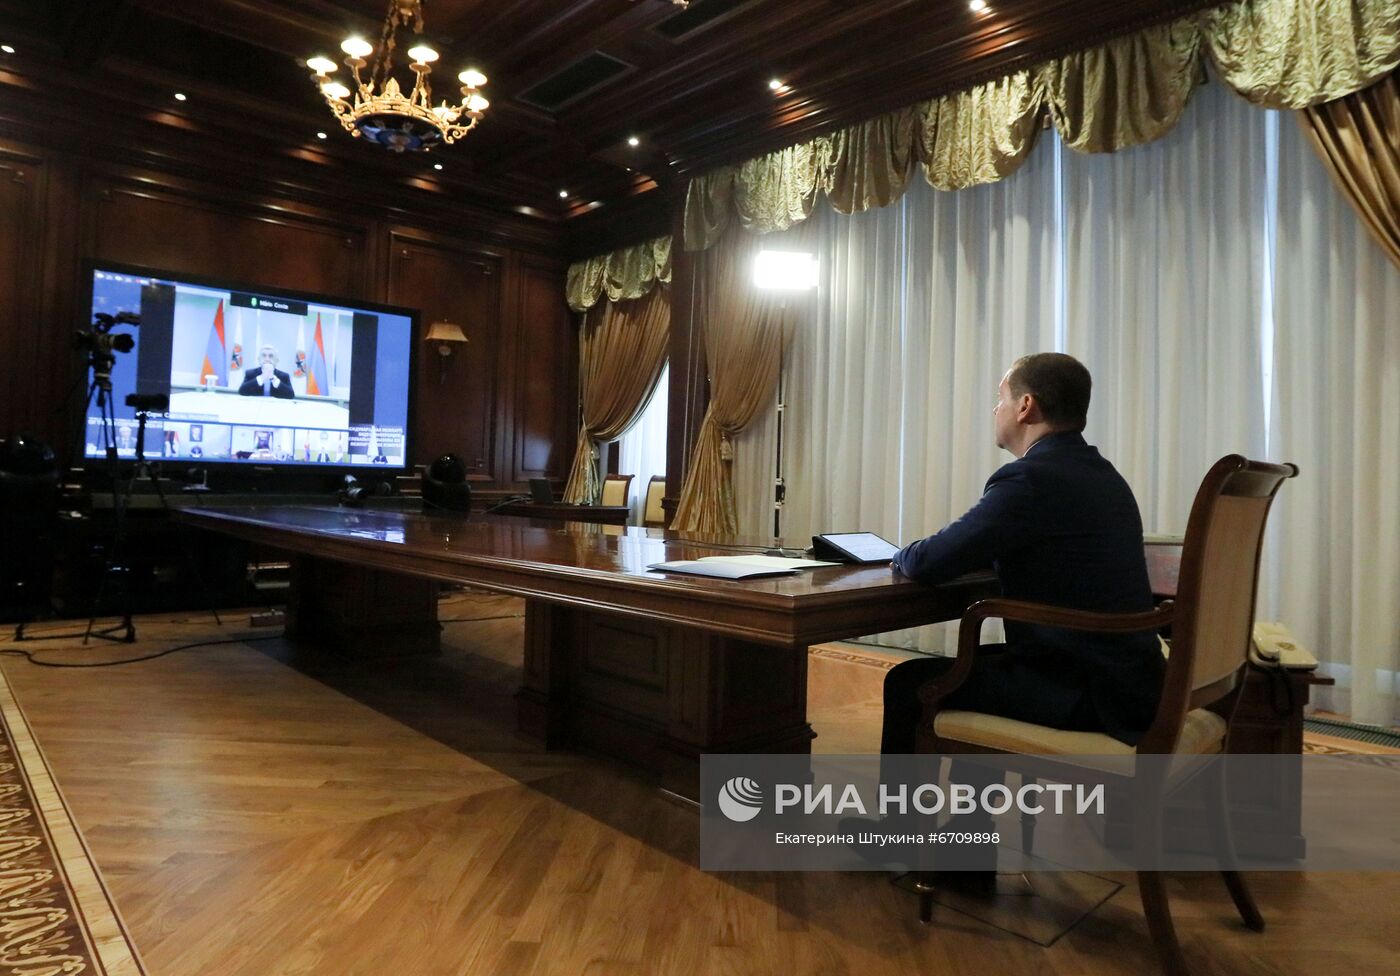 Зампред Совбеза РФ Д. Медведев выступил на конференции "Глобальные вызовы 21 века: межпартийное измерение"